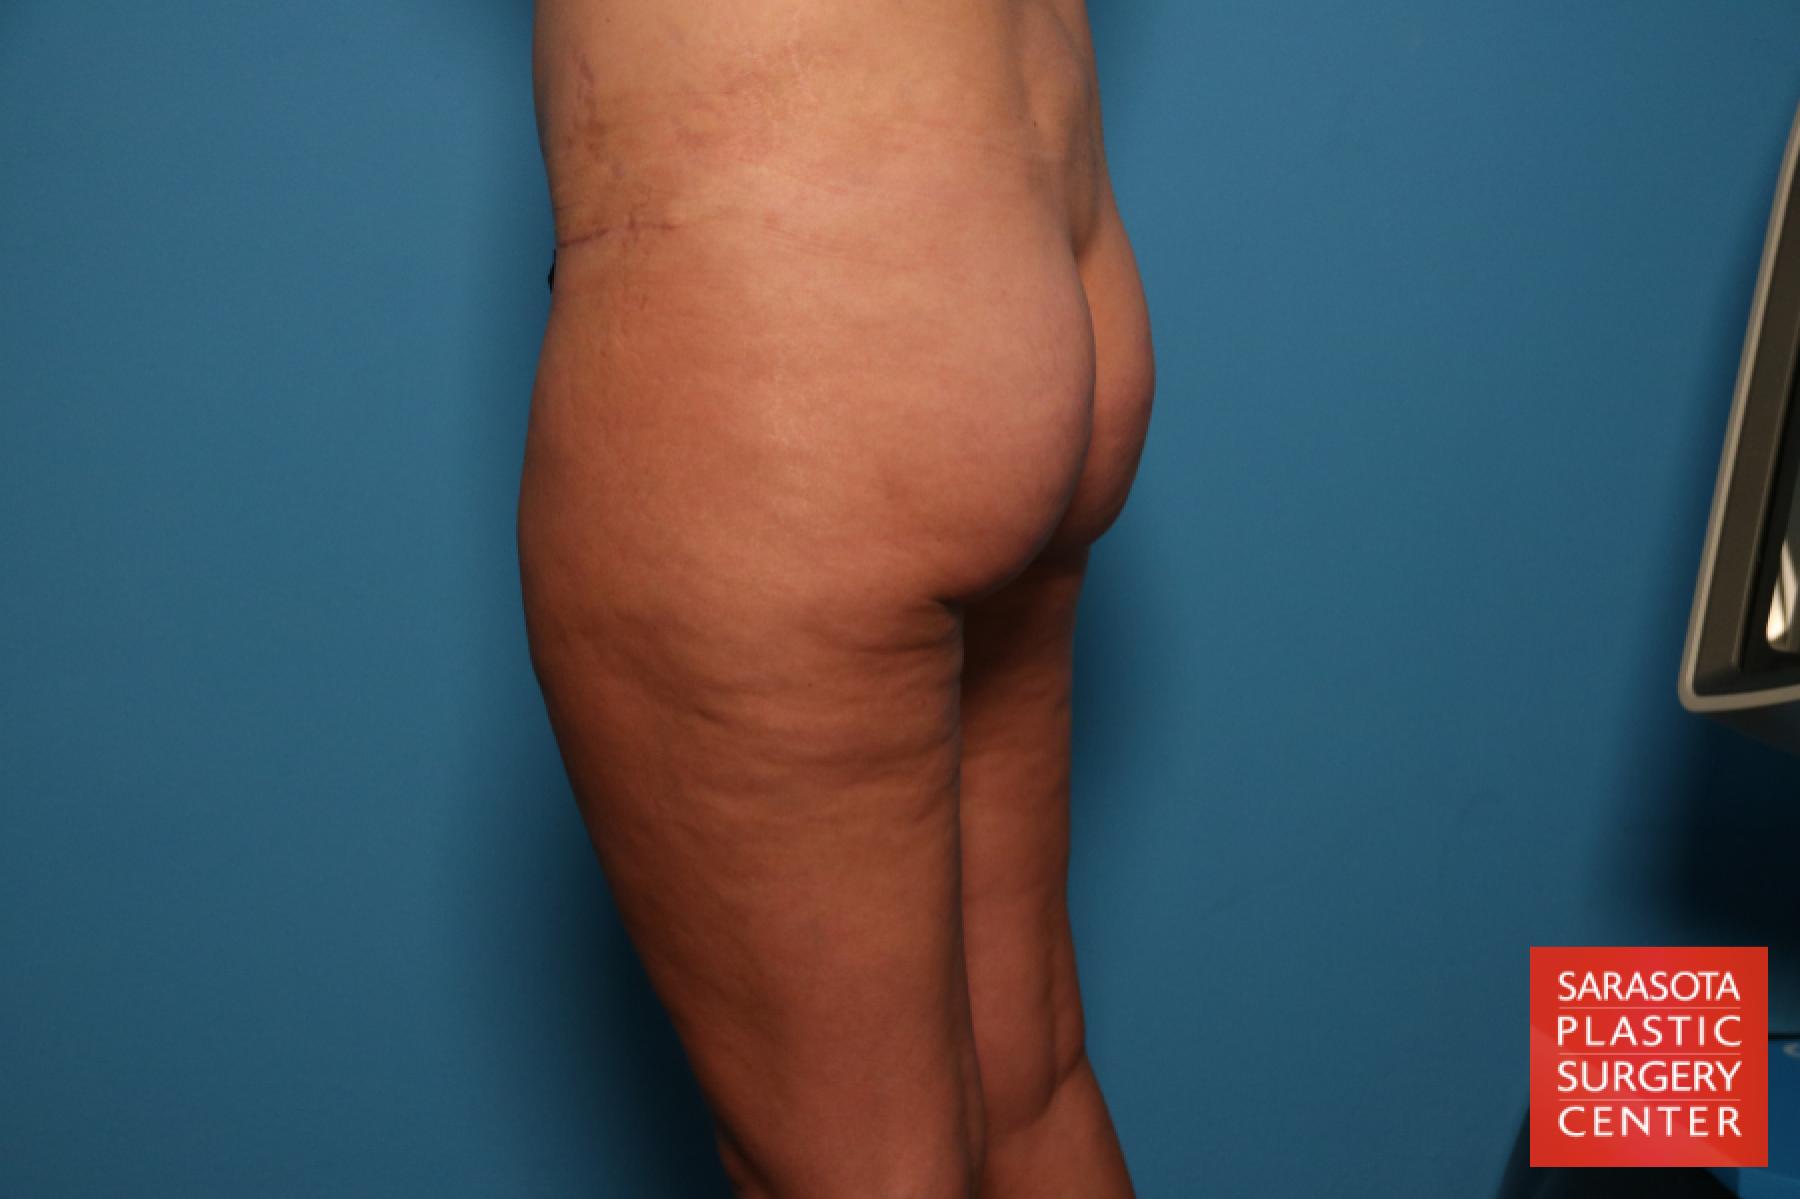 Liposuction: Patient 7 - After 4